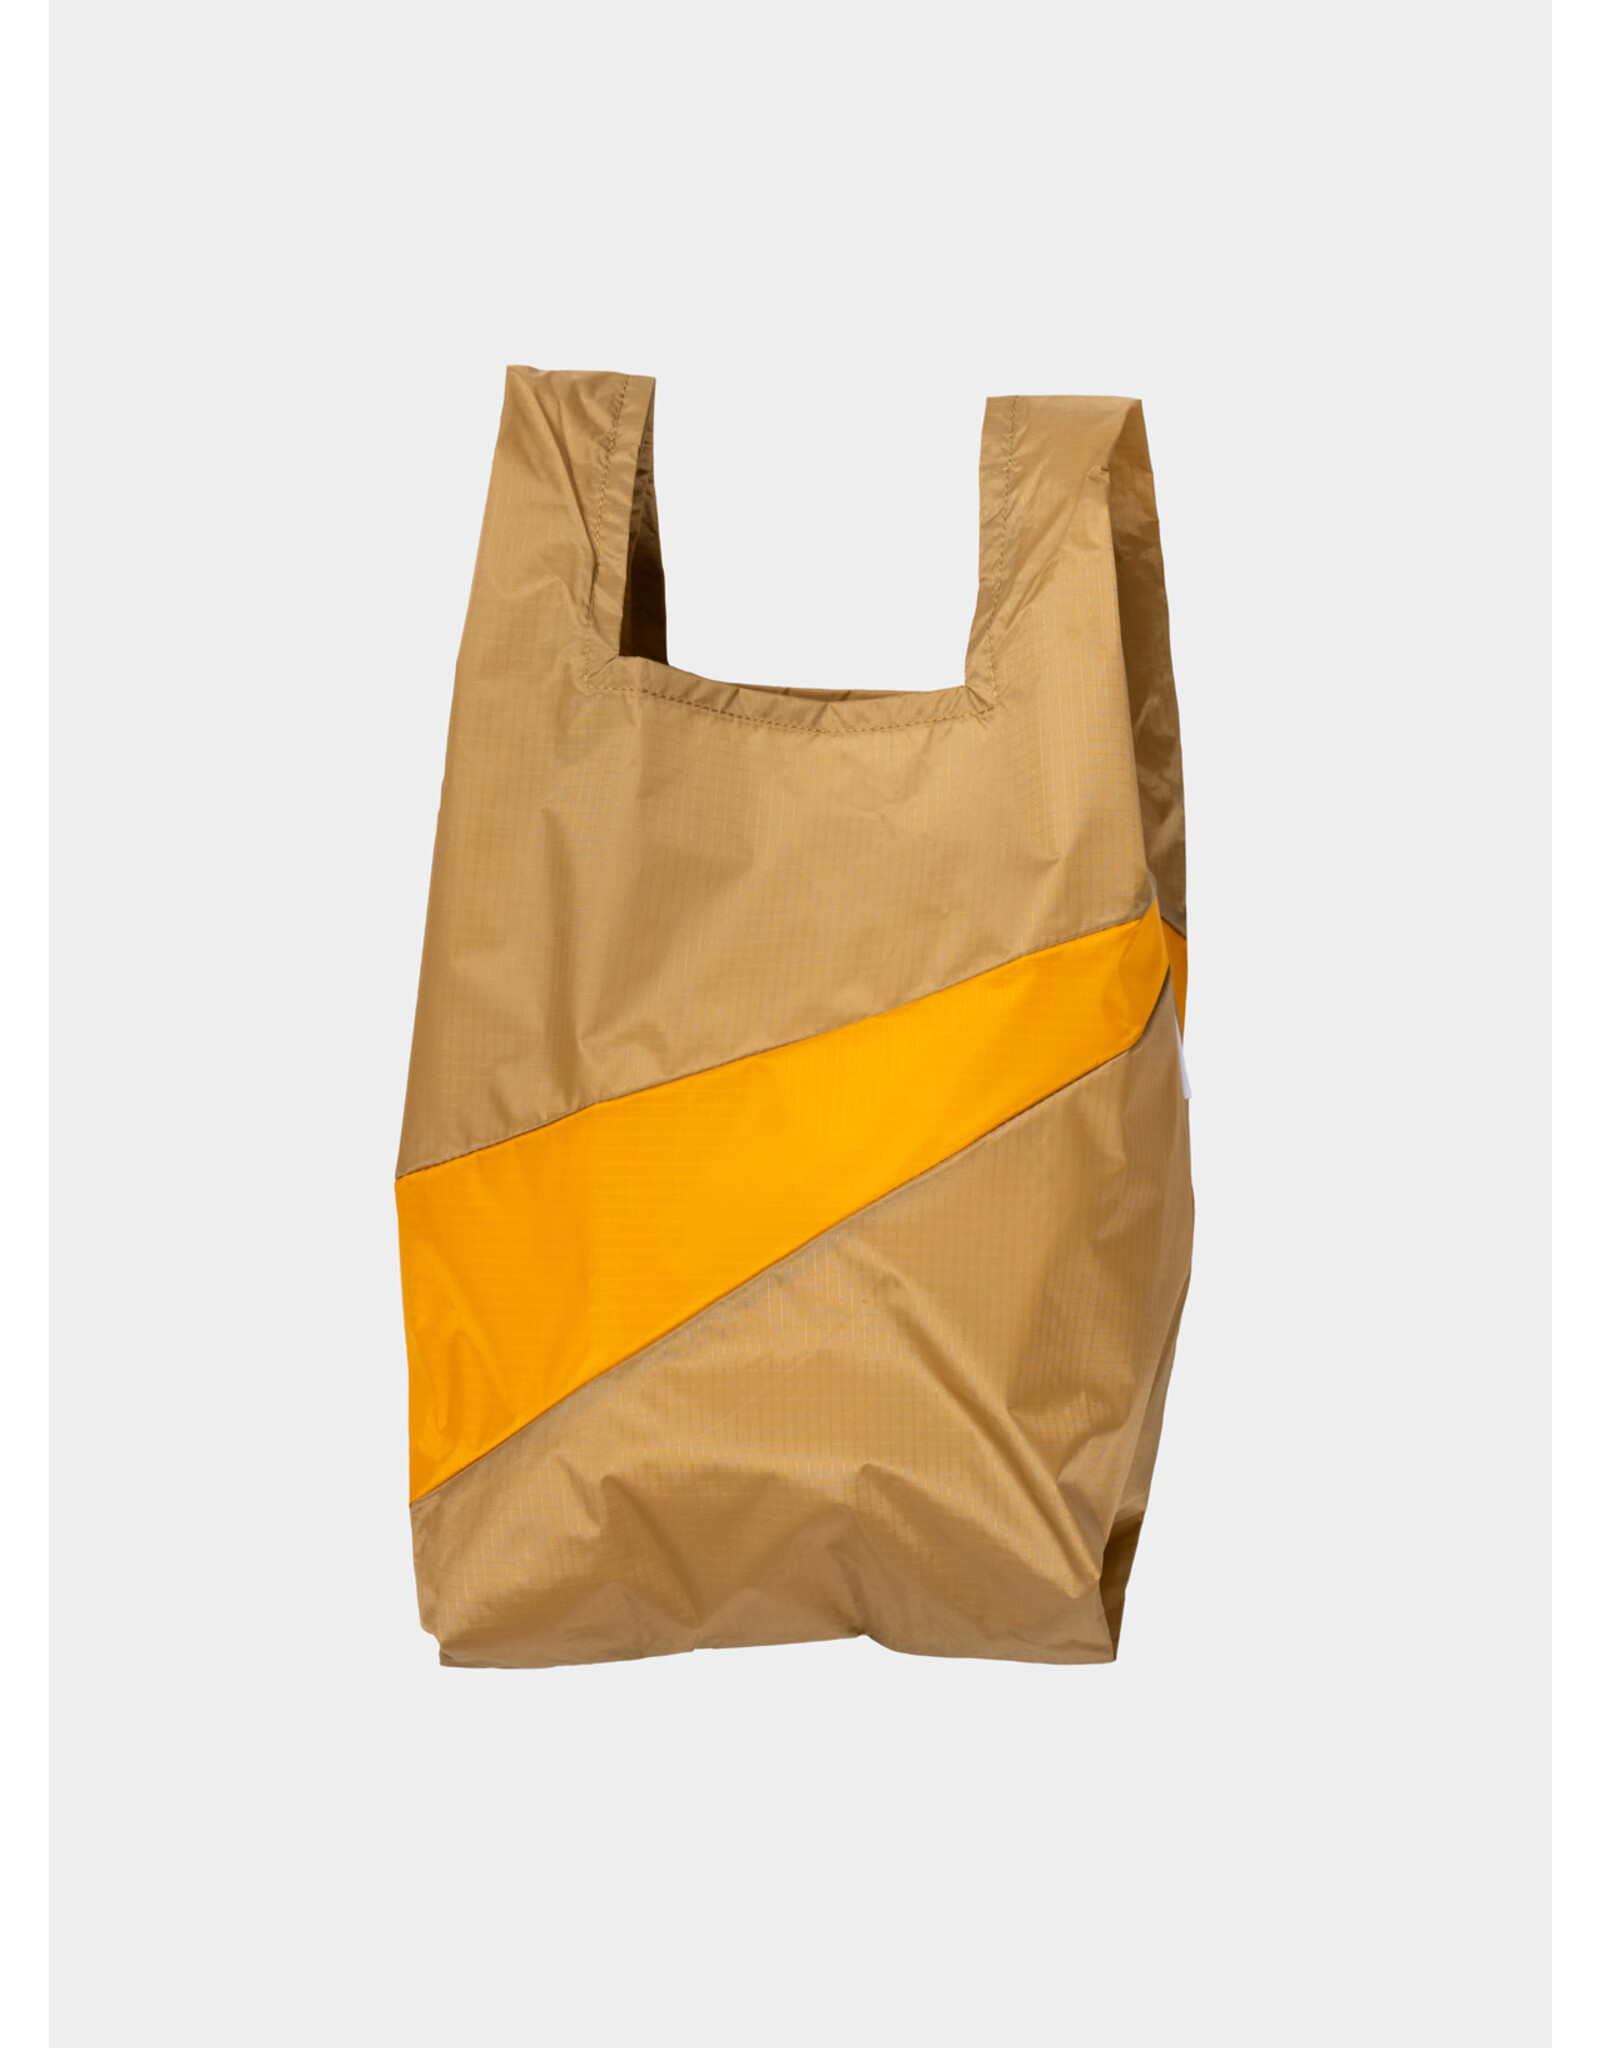 Susan Bijl Shopping bag M, Camel & Arise - 27 x 55 x 18 cm